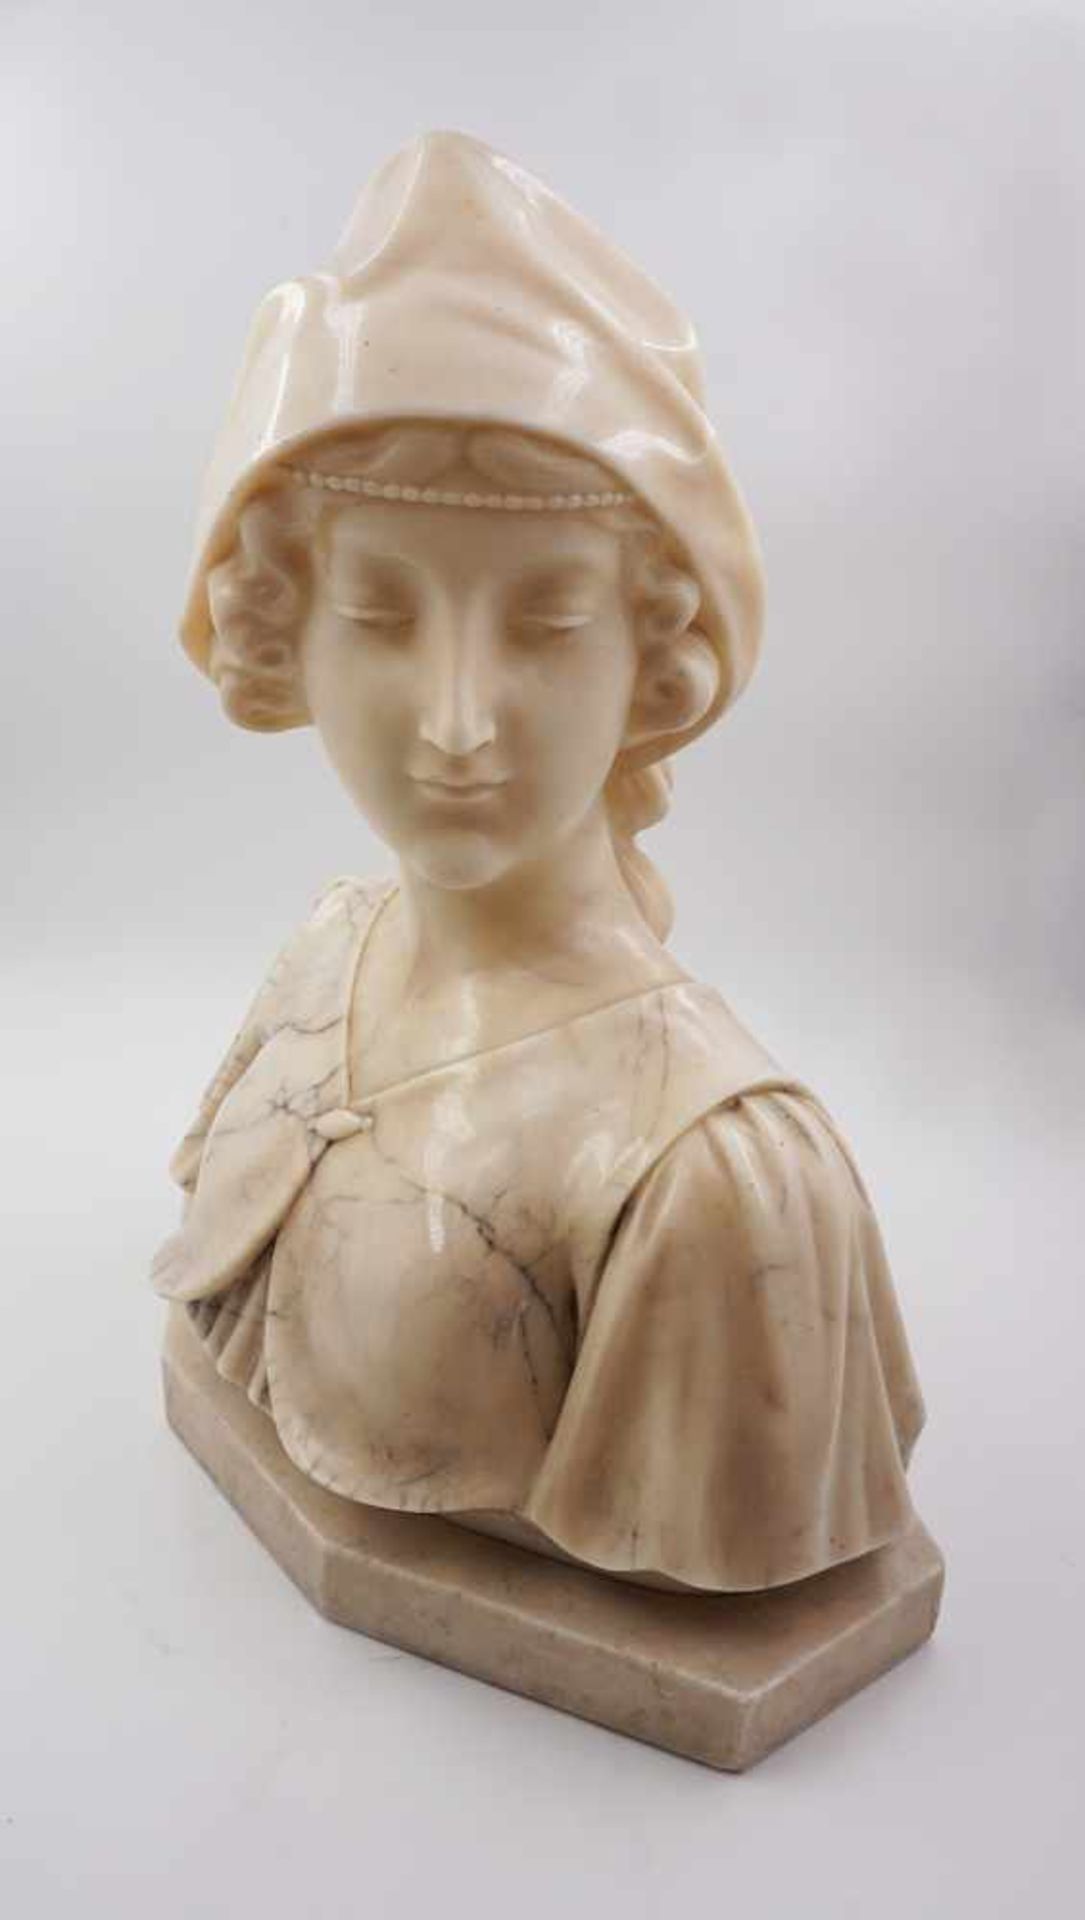 1 Skulptur Marmor "Mädchenbüste mit Tuch" wohl um 1900 signiert A. GENNAY - Image 3 of 3